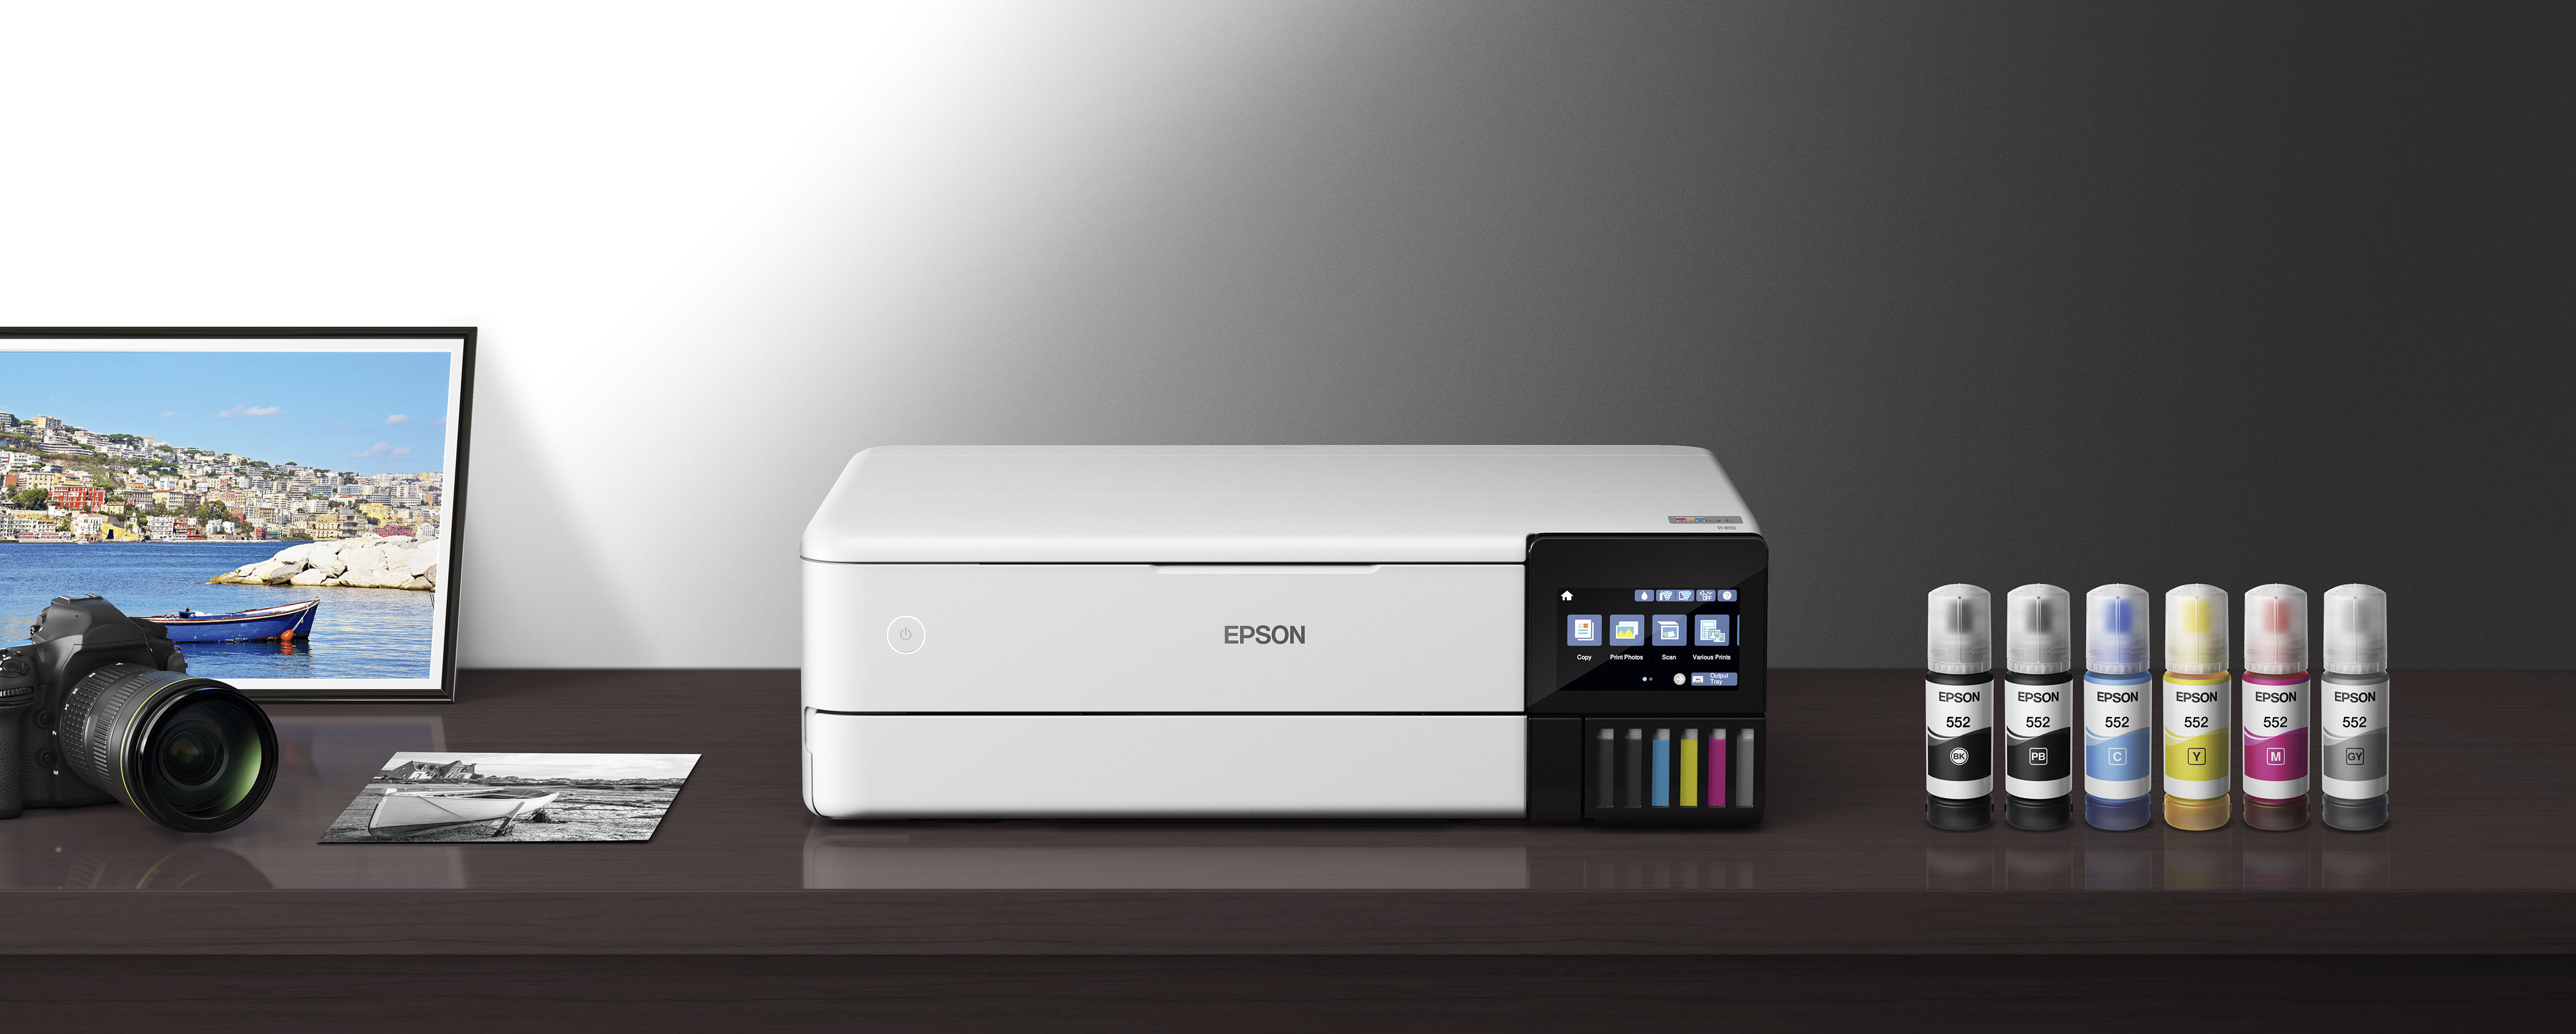 NEW* Epson EcoTank Photo ET-8550 Color Inkjet All-In-One Printer White  *SEALED* 10343952492